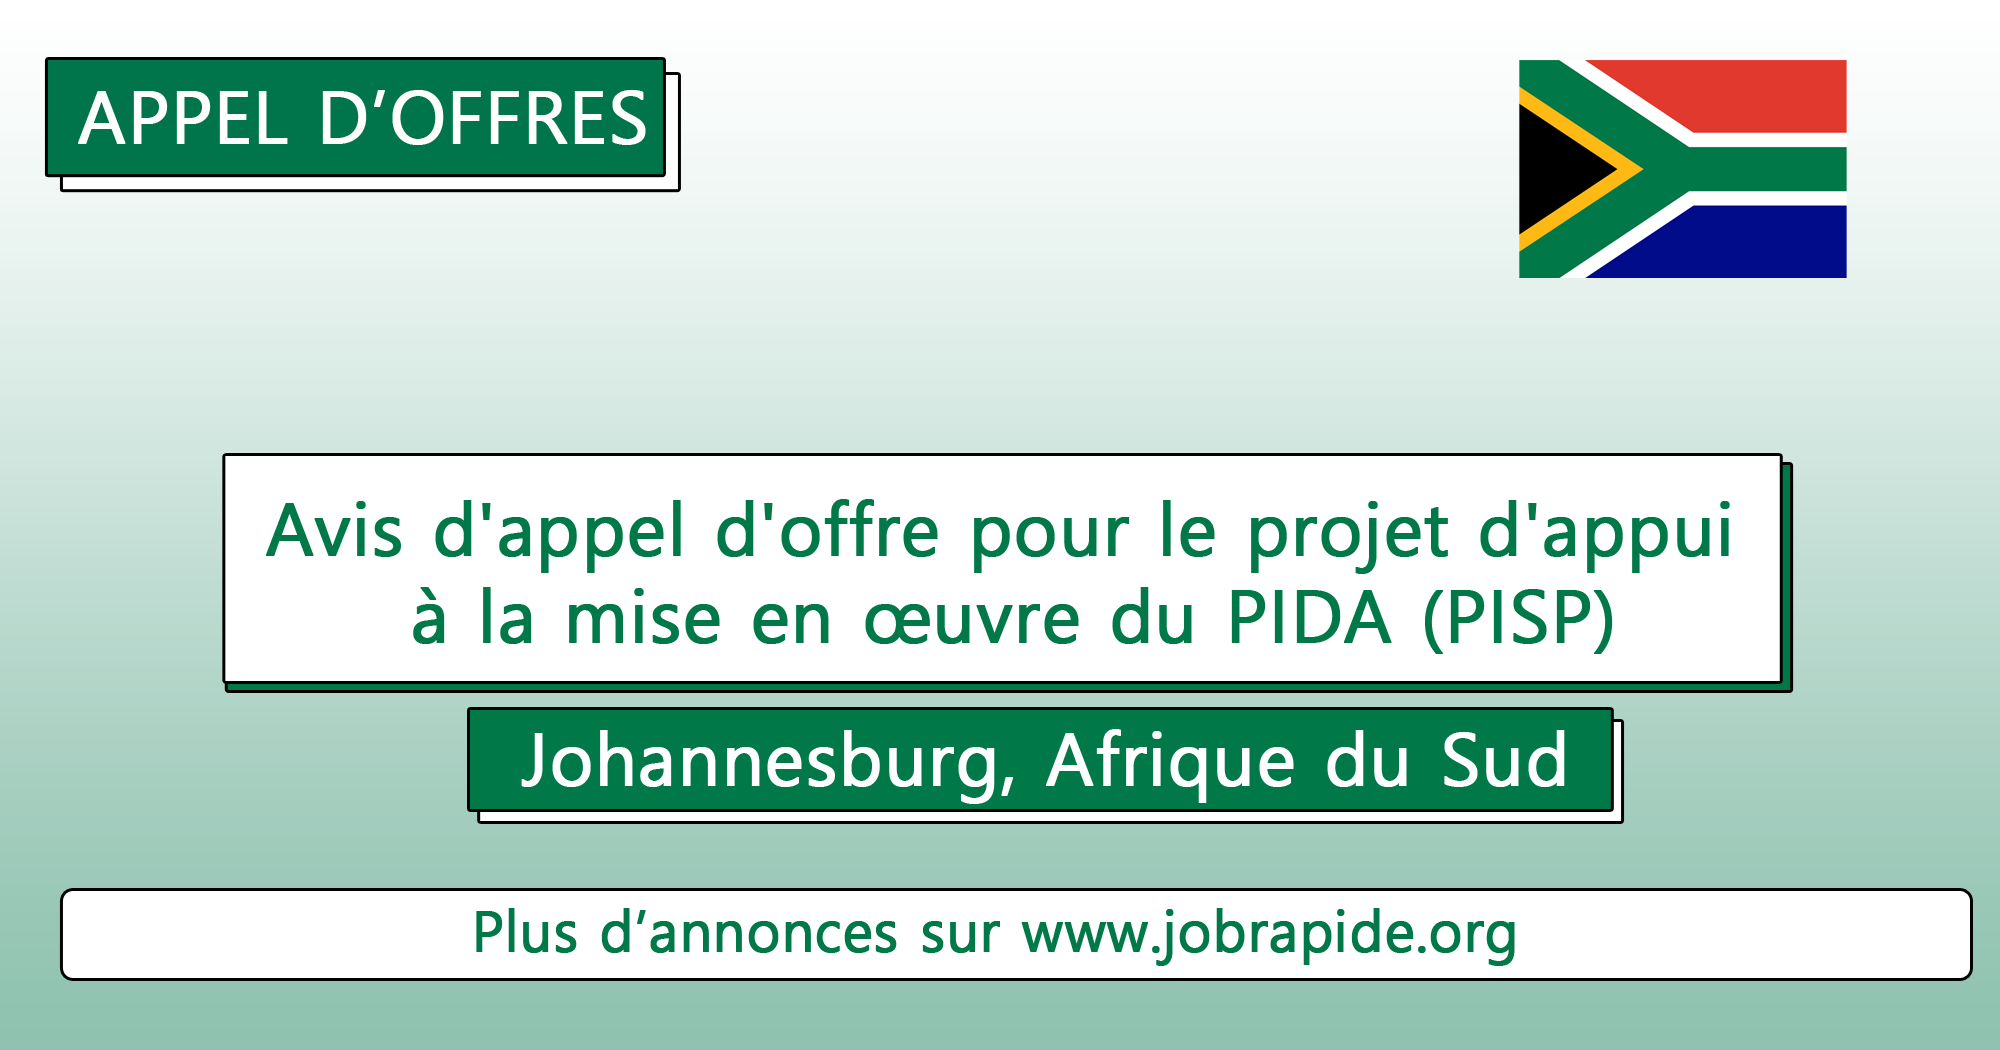 Avis d’appel d’offre pour le projet d’appui à la mise en œuvre du PIDA (PISP), Johannesburg, Afrique du Sud